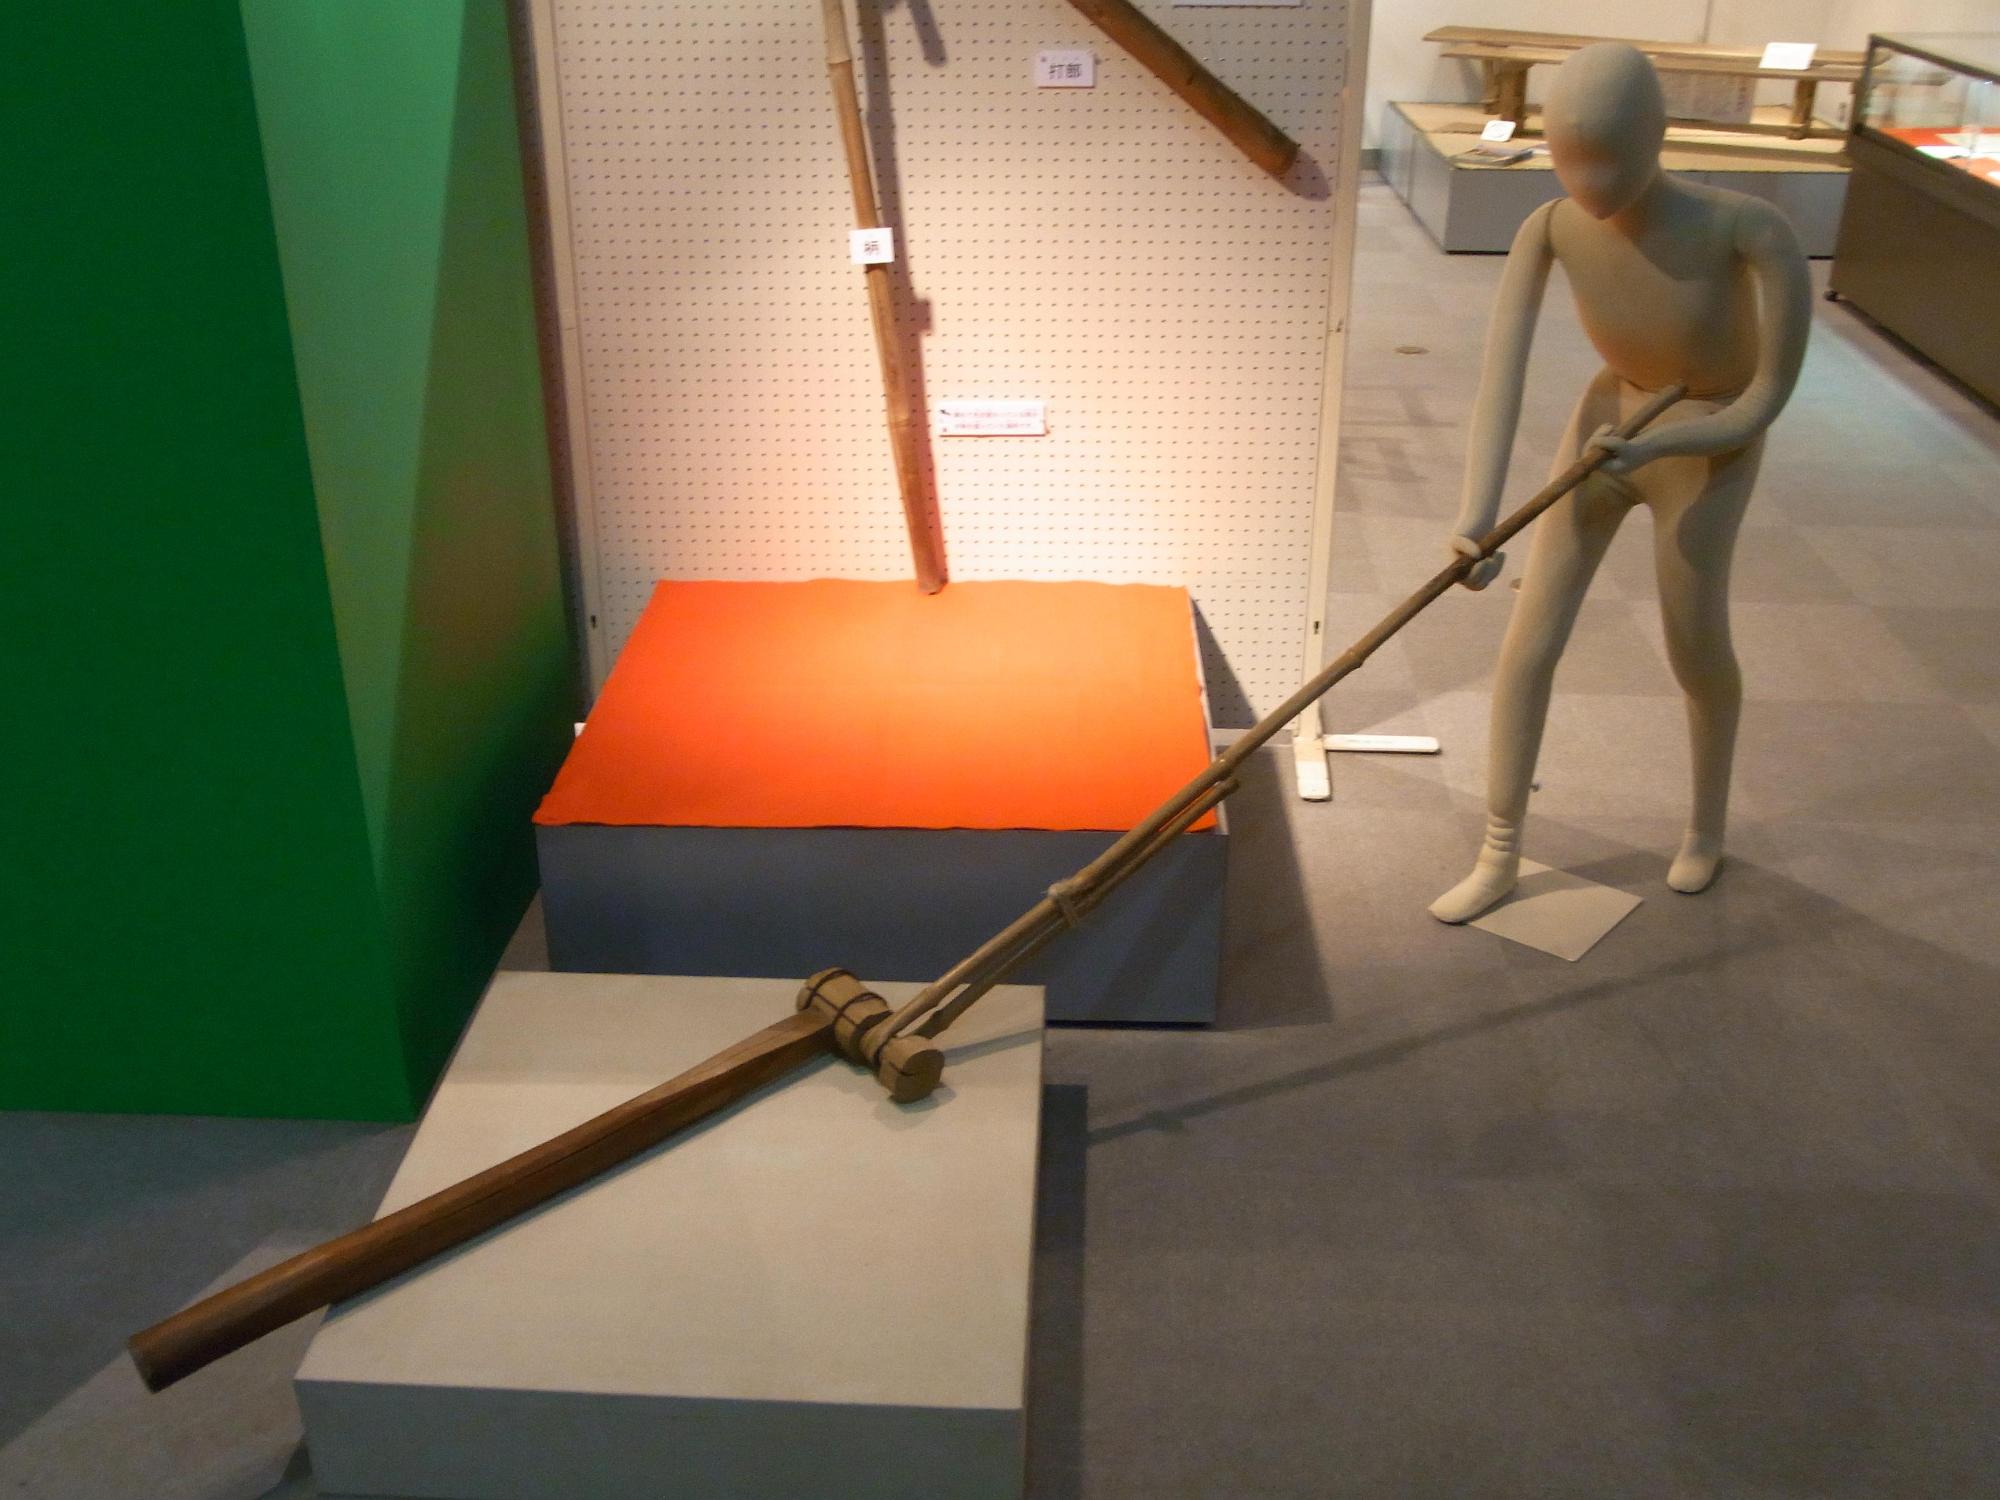 マネキンがくるり棒を使う様子が、資料館に展示された写真